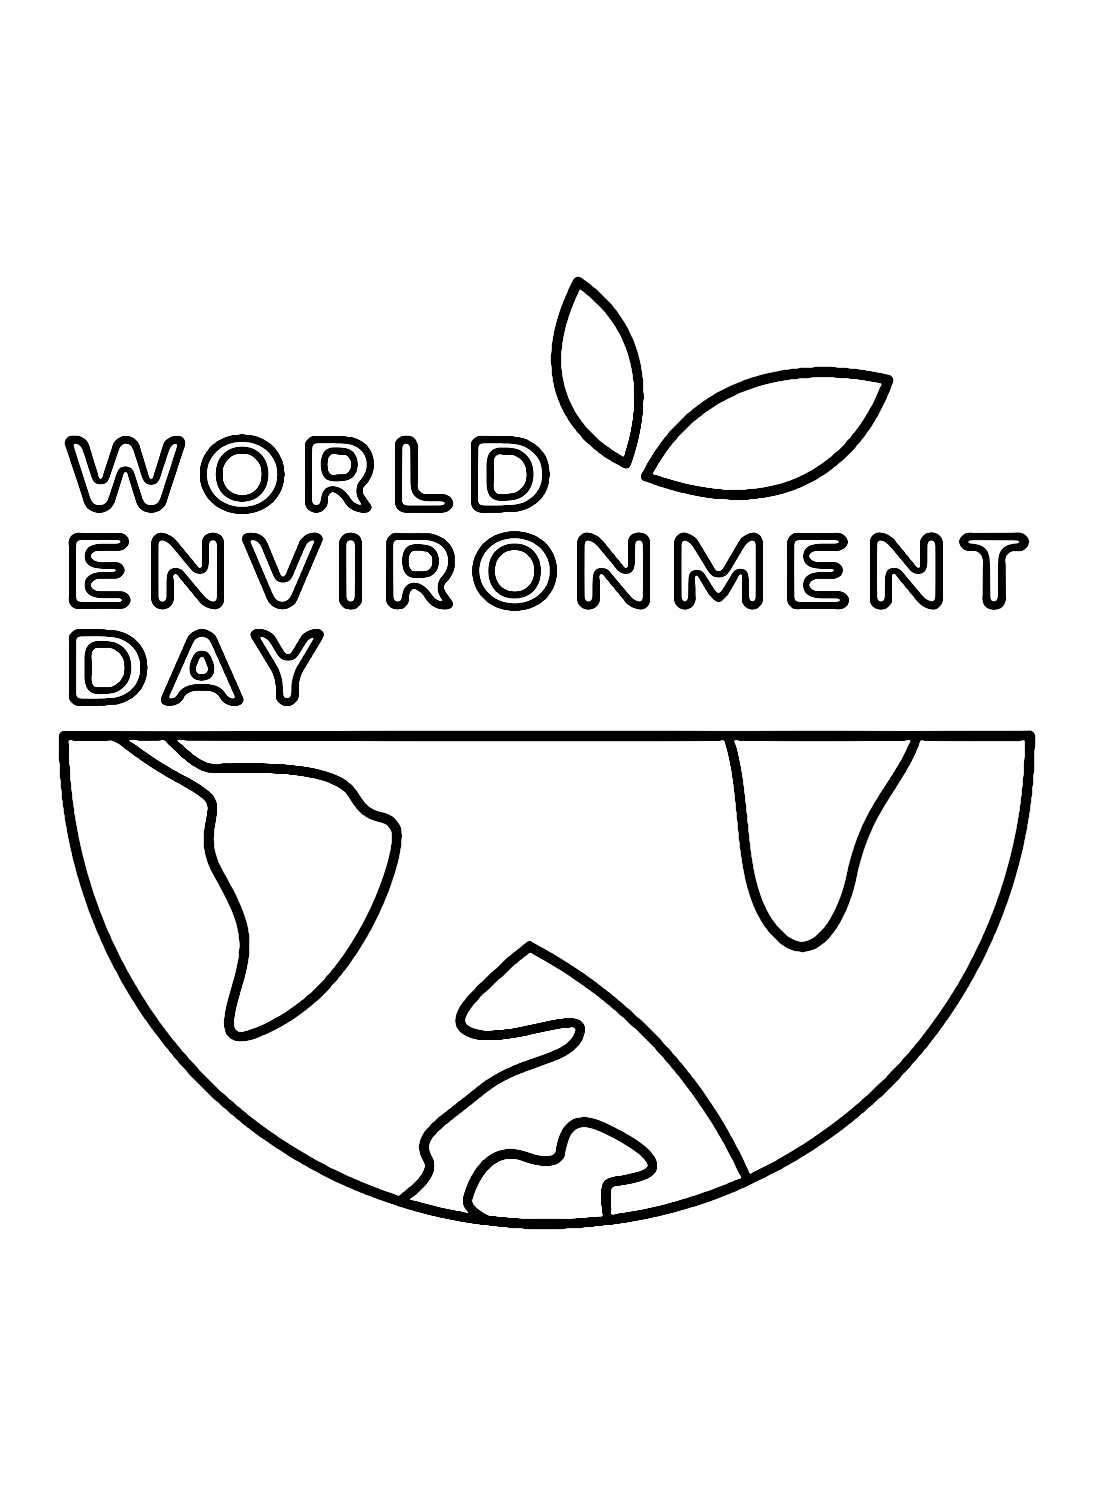 يوم البيئة العالمي مجاني من يوم البيئة العالمي